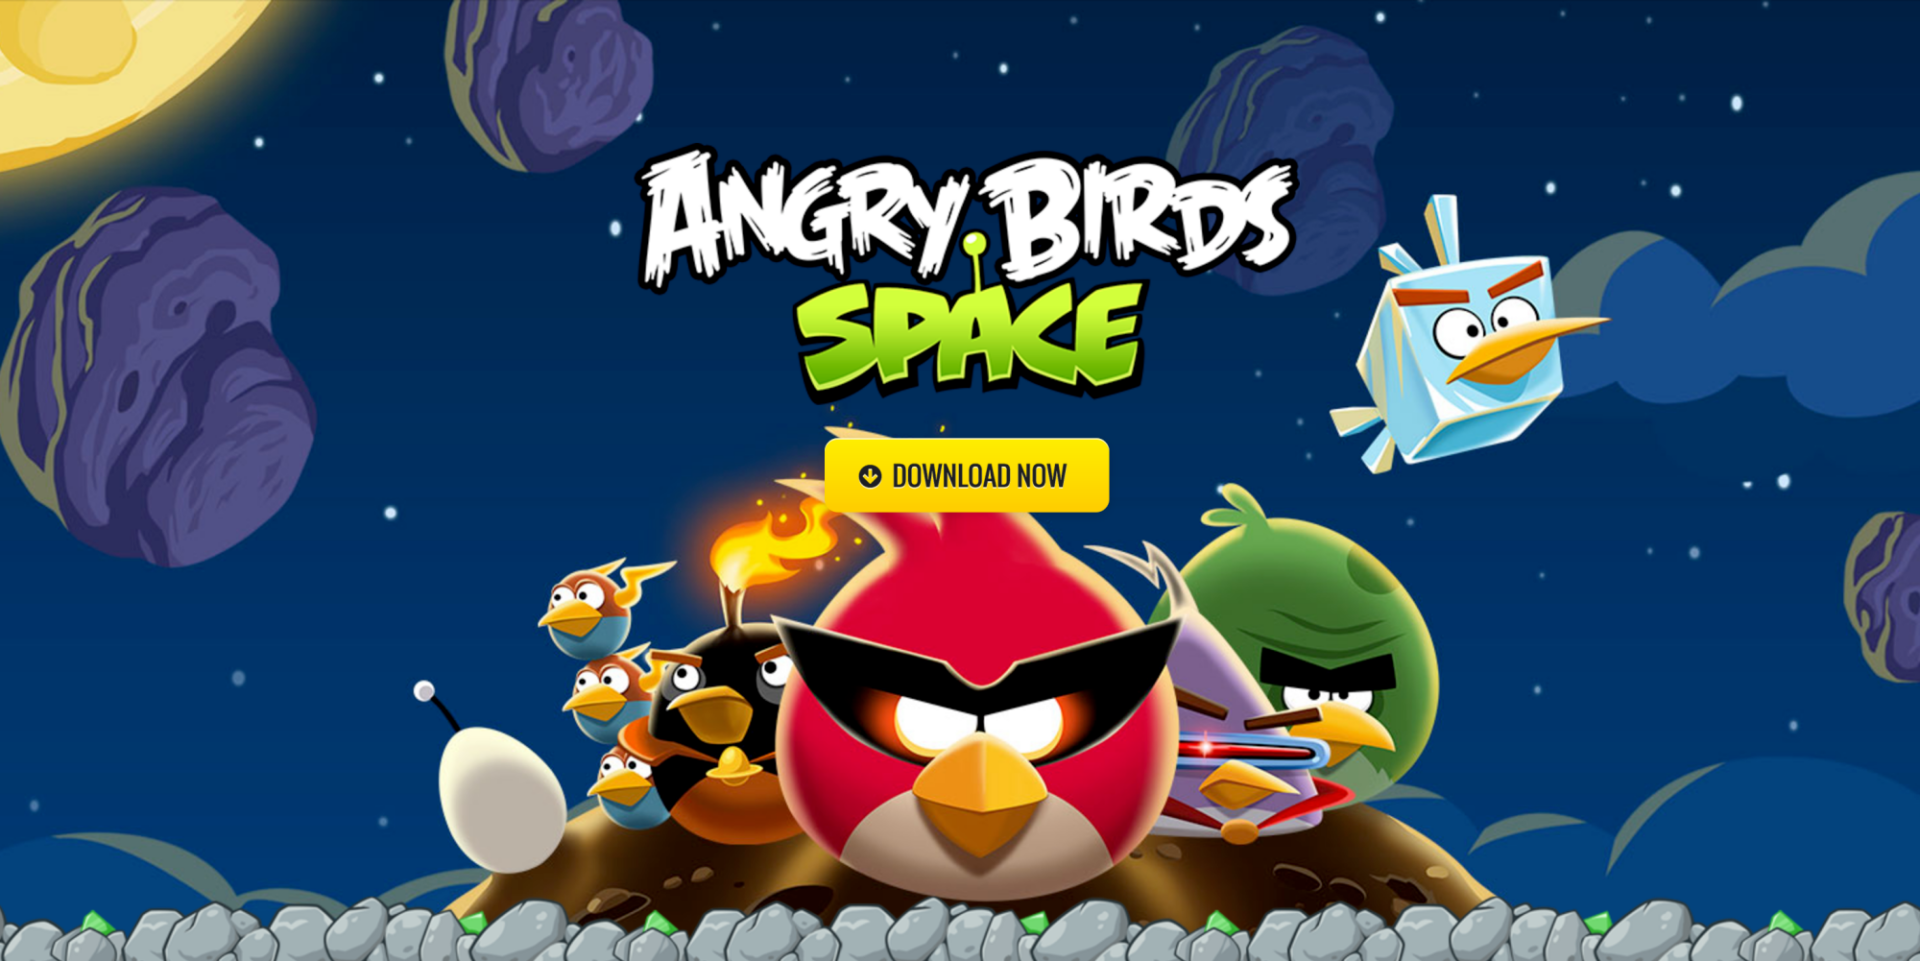 Miễn phí tải về Angry Bird Space cho iPhone, iPad